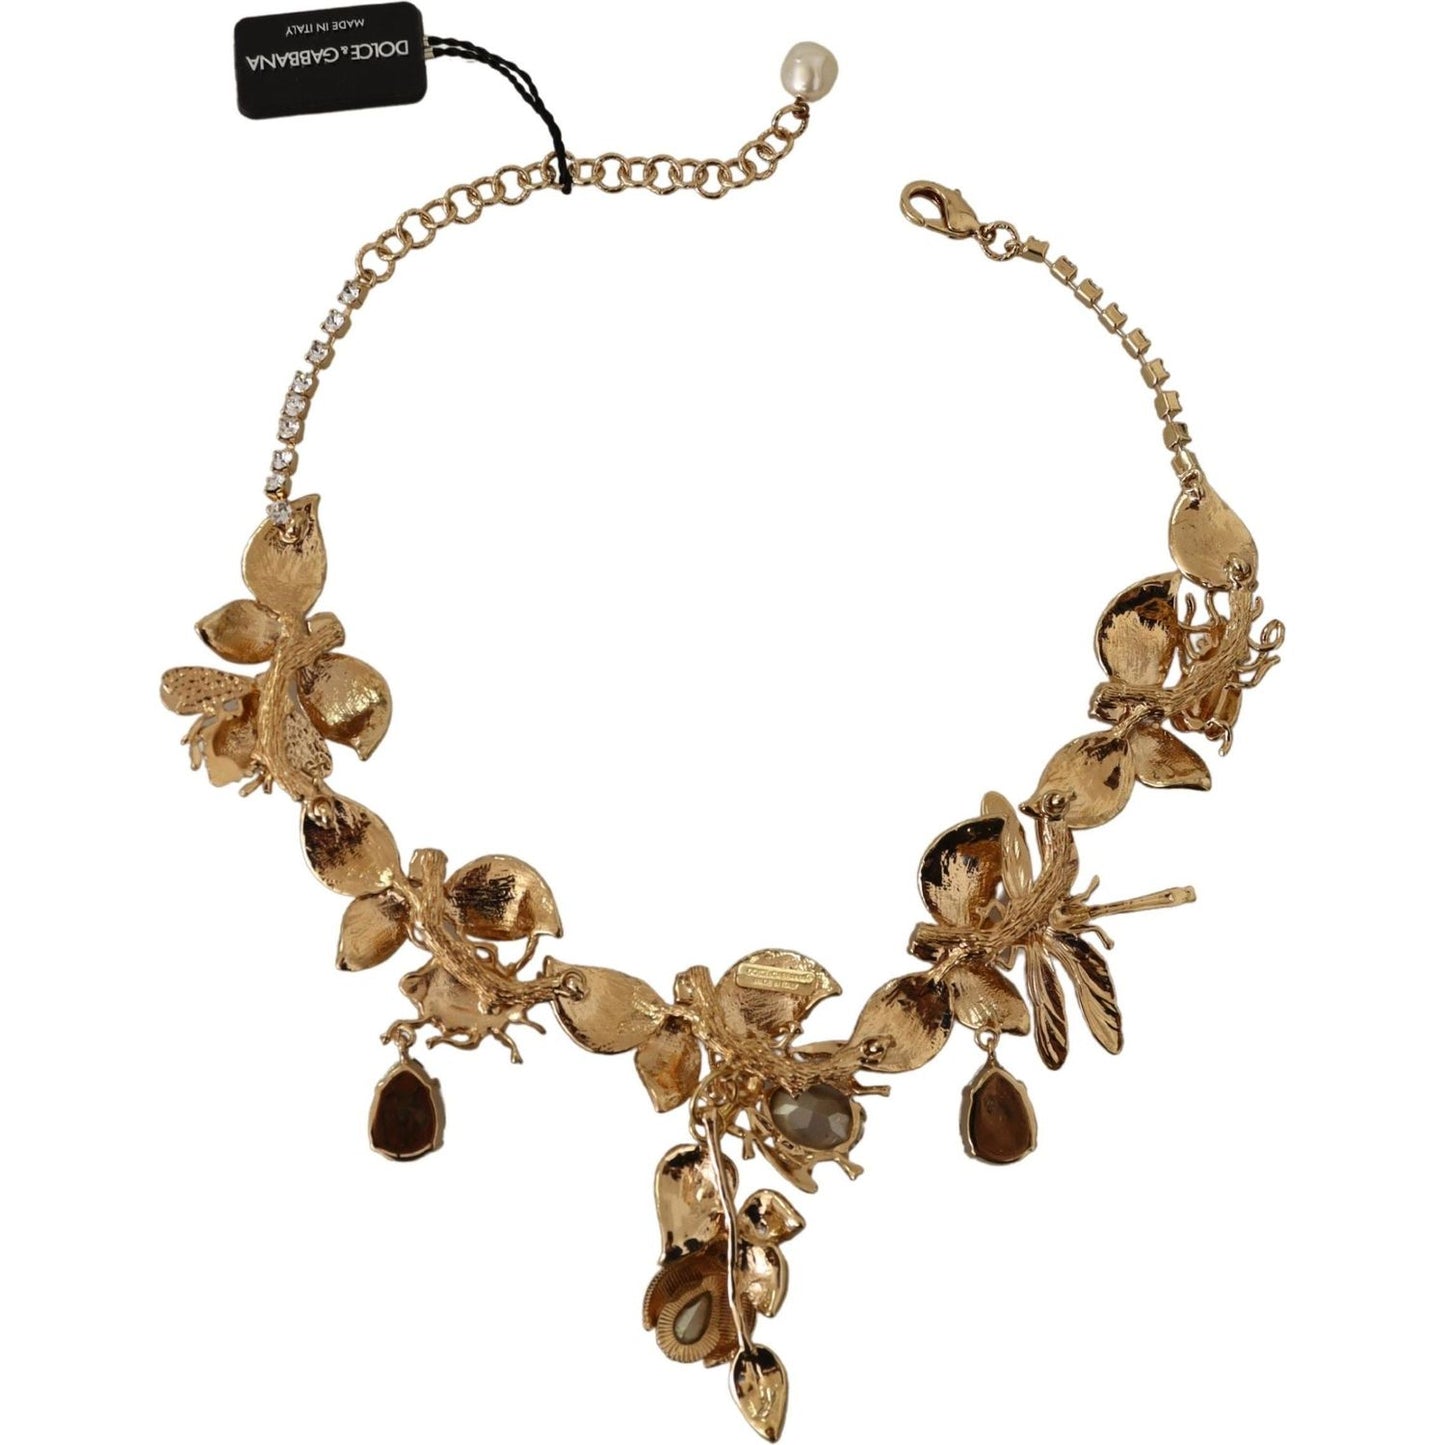 Dolce & Gabbana Elegant Sicily Floral Bug Statement Necklace gold-brass-floral-sicily-crystal-statement-necklace WOMAN NECKLACE IMG_1866-ab67fabb-51c.jpg